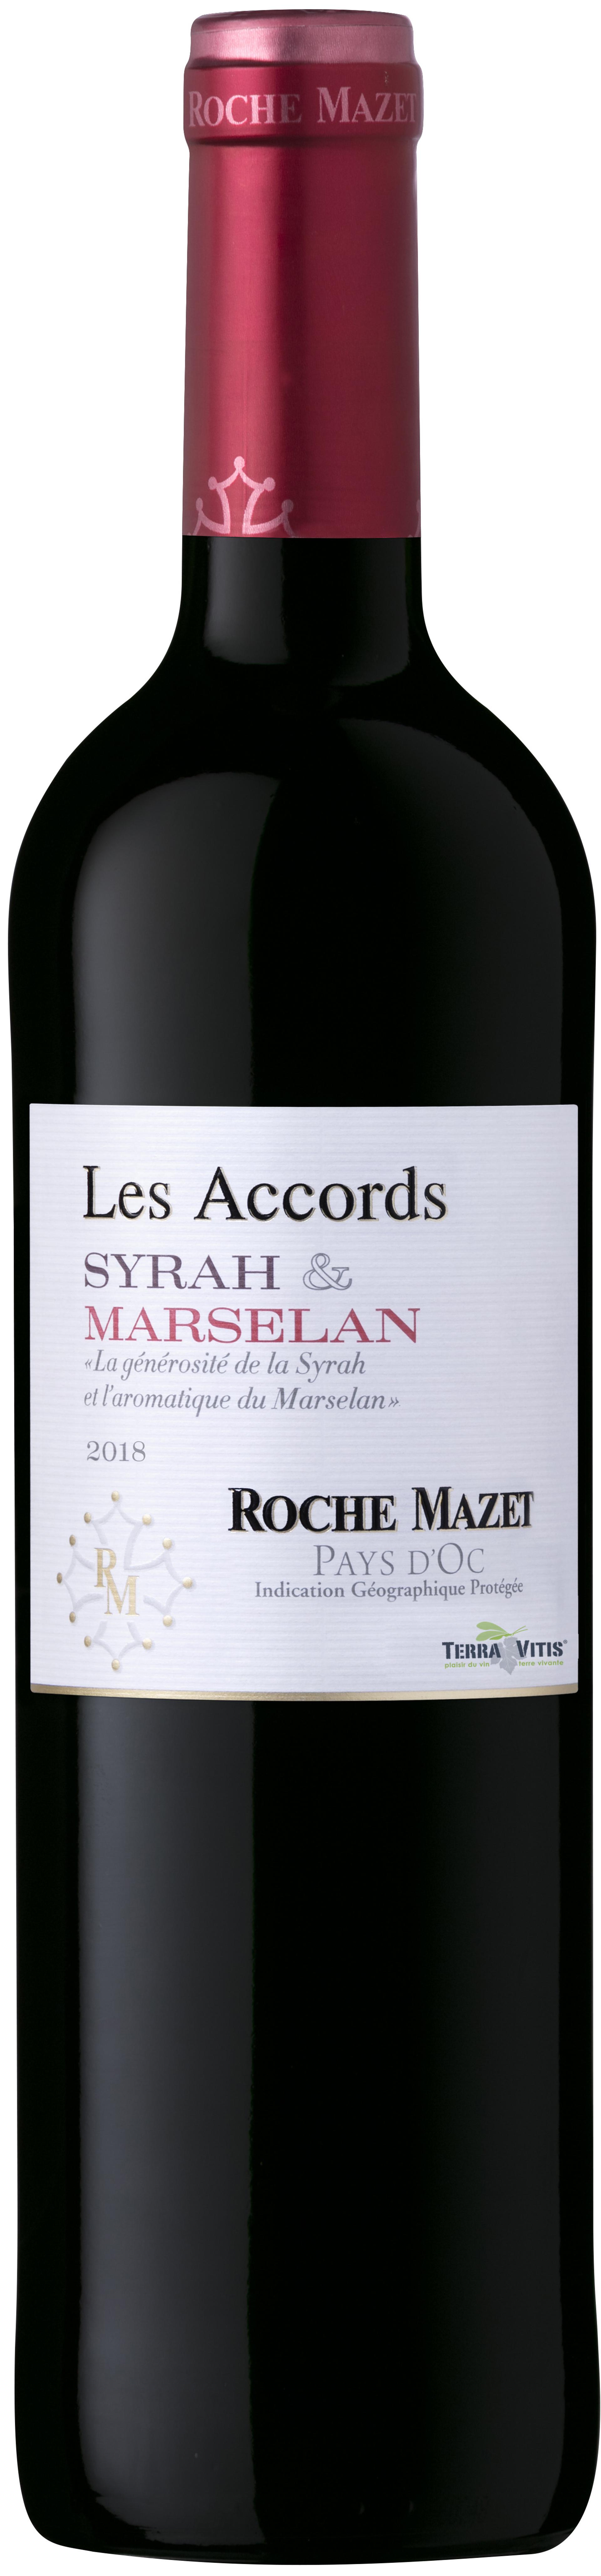 Les Accords Syrah & Marselan